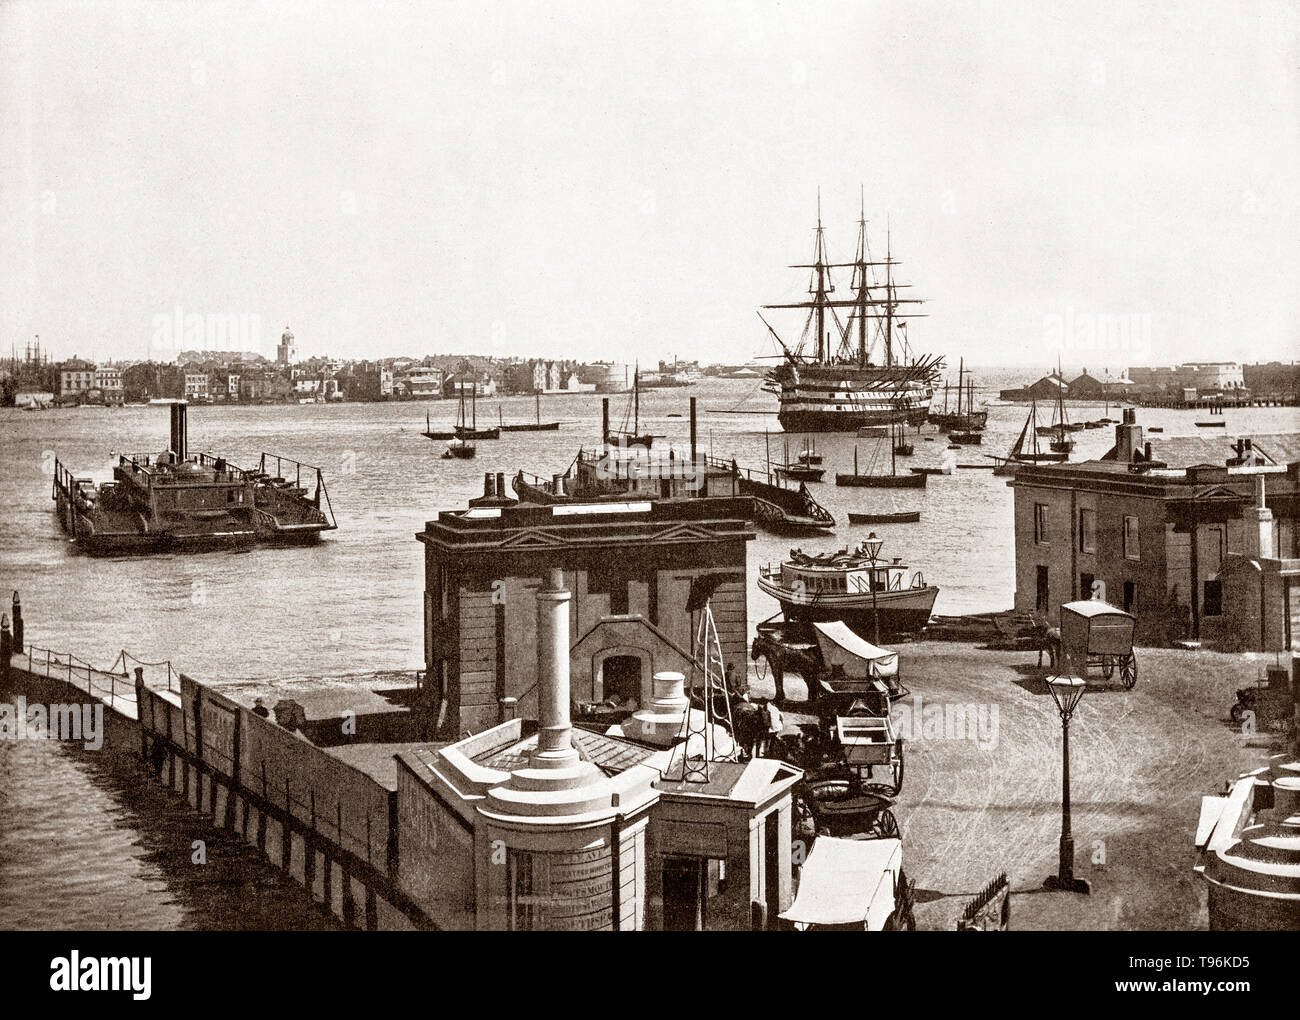 Ein Blick aus dem späten 19. Jahrhundert von einem frühen kleine Autofähre von Admiral Nelsons Flaggschiff "Sieg" Floating in den riesigen Hafen in Portsmouth. einer Hafenstadt in Hampshire, England in den Schatten gestellt. Während des 19. Jahrhunderts, die erste Linie der Welt war in Portsmouth Dockyard's Block Mühlen eingestellt, so dass es die meisten Industrieländer der Welt und die Wiege der Industriellen Revolution. Portsmouth war auch Die stark befestigte Stadt der Welt und wurde als "das weltweit größte Marinehafen' auf der Höhe des Britischen Empire in Pax Britannica. Stockfoto